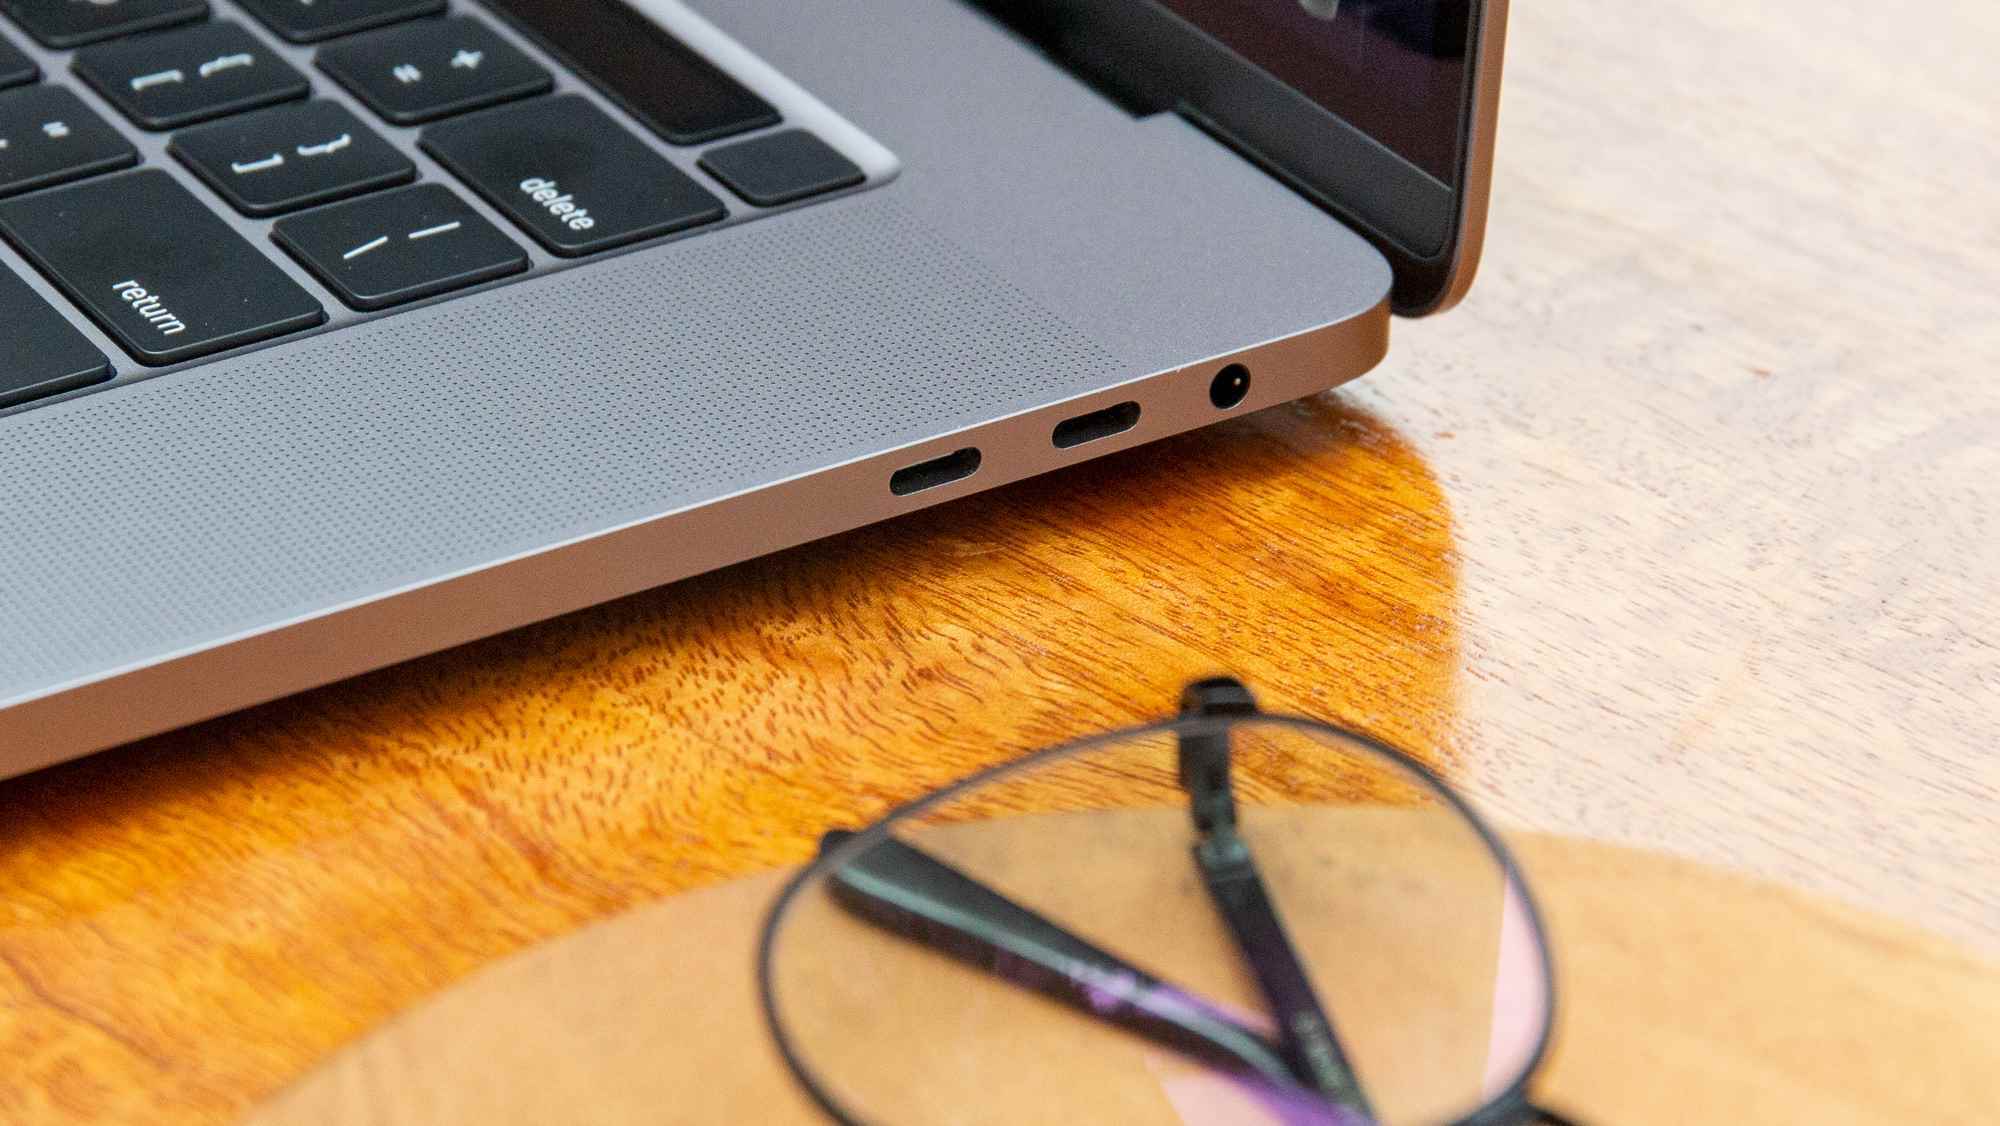 En İyi MacBook'lar - 16 inç MacBook Pro bağlantı noktaları